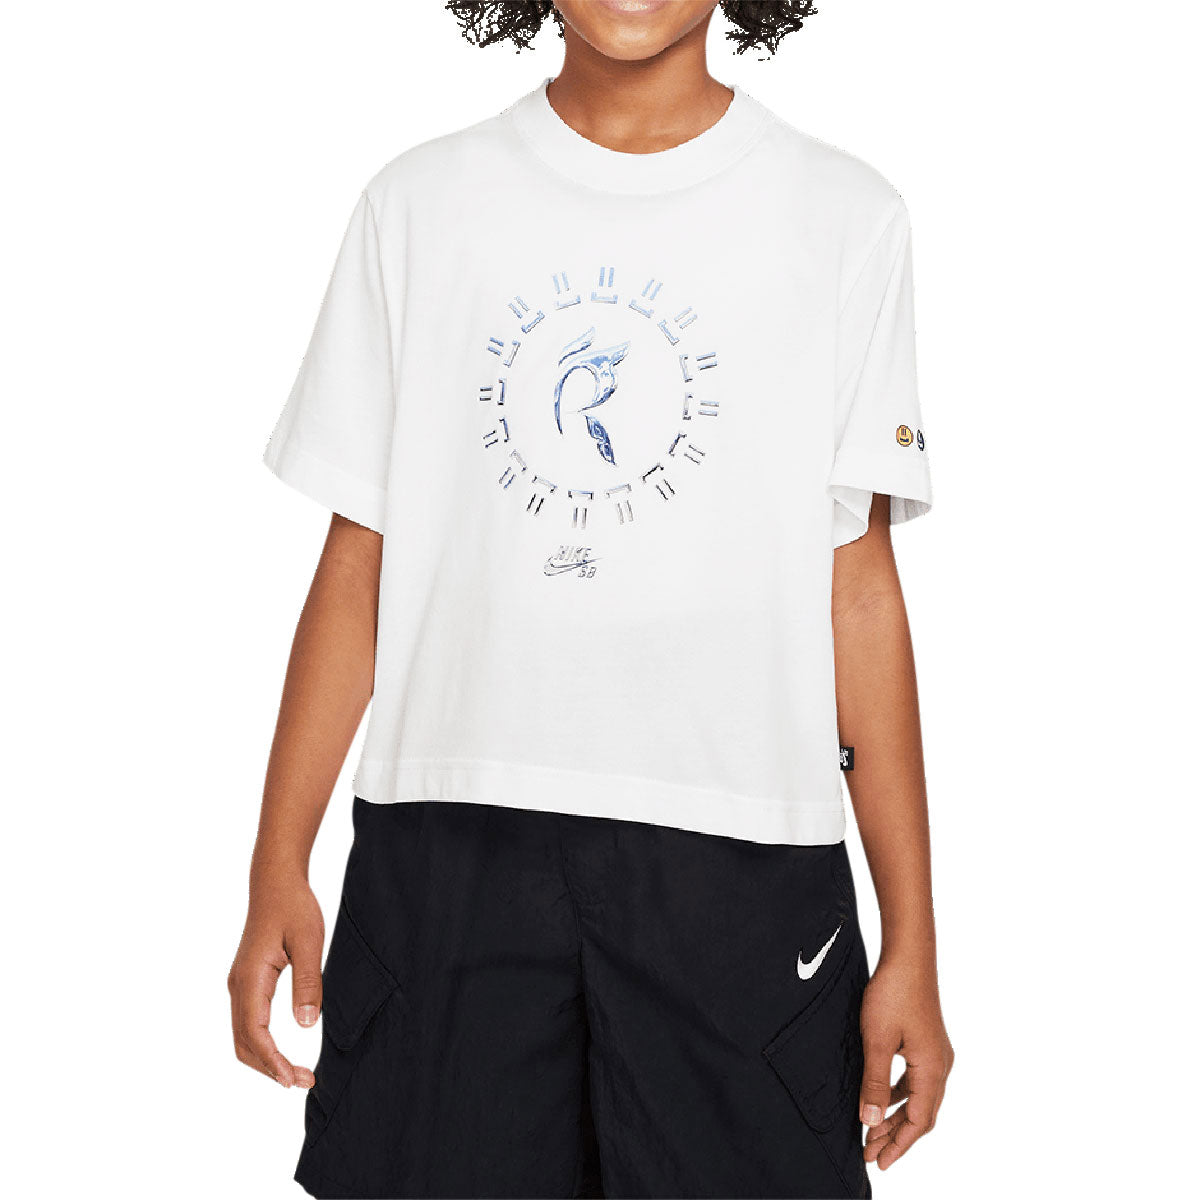 Nike SB Womens x Rayssa Leal T-Shirt - White image 2